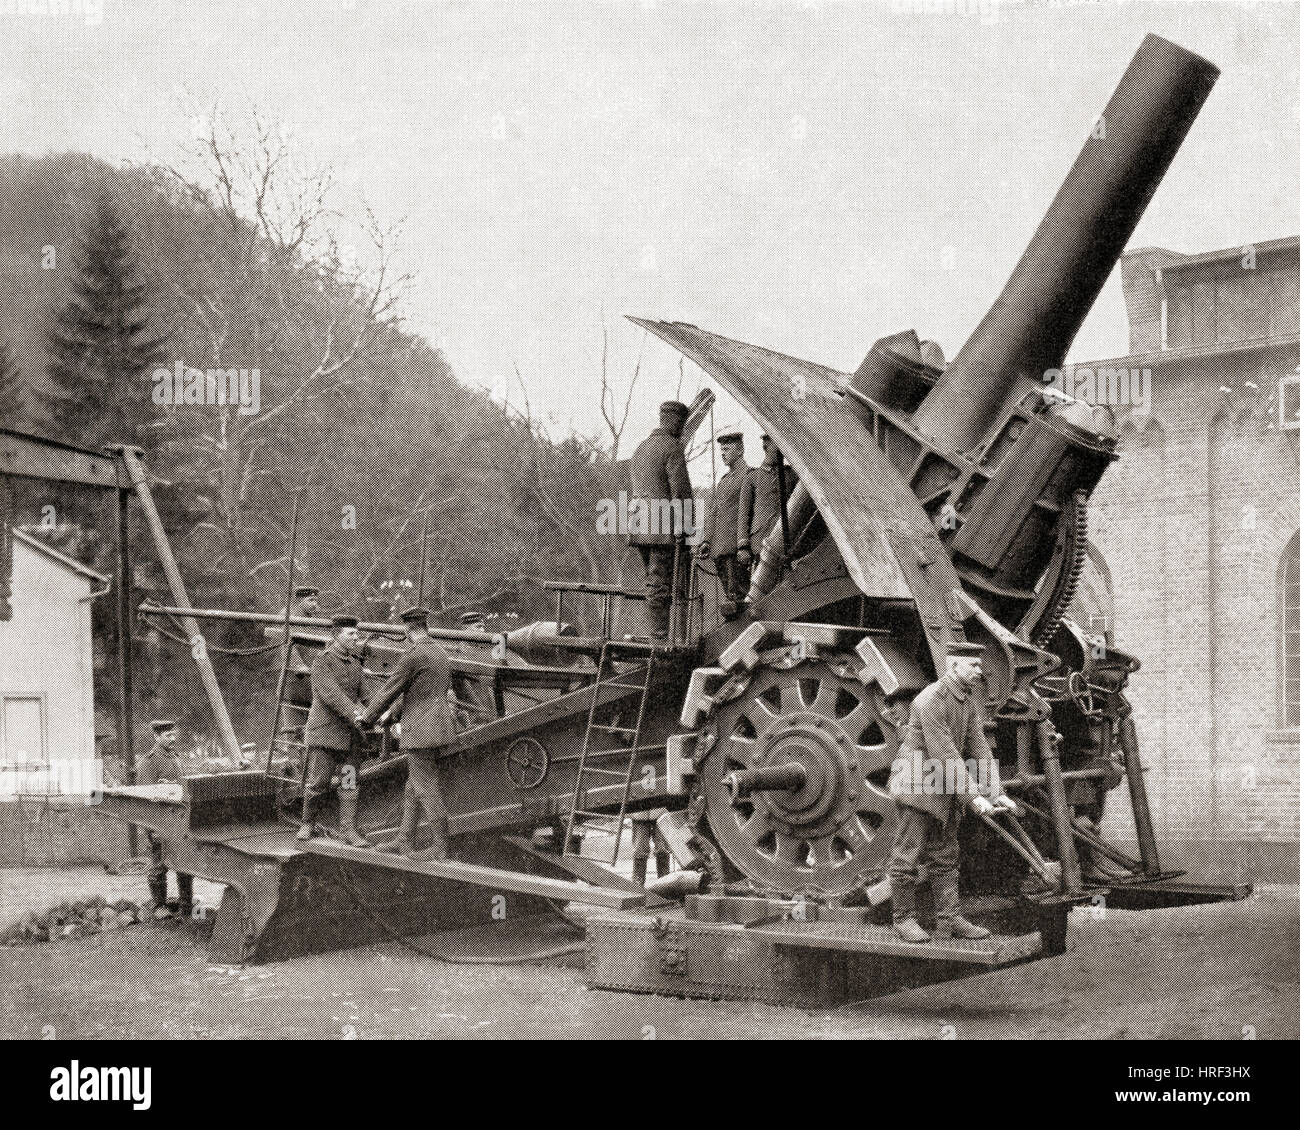 Big Bertha, eine schwere Haubitze Waffe in Deutschland zu Beginn des ersten Weltkrieges entwickelt.  Aus Meyers Lexikon veröffentlicht 1927. Stockfoto